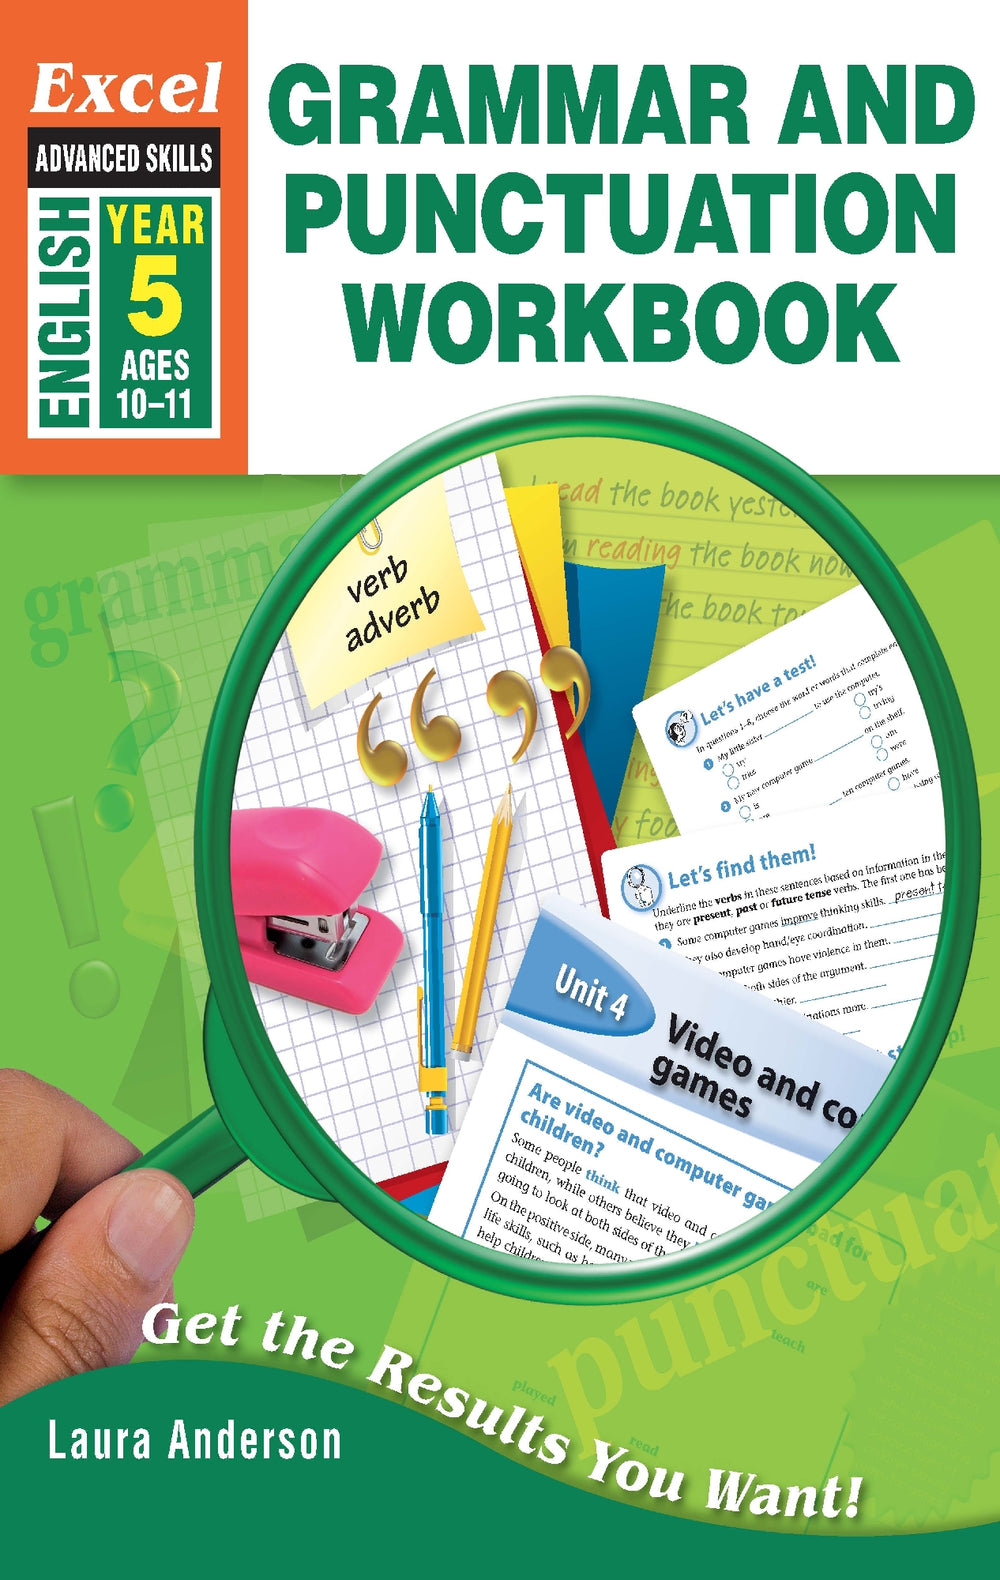 Excel Advanced Skills Workbook: Grammar and Punctuation Workbook Year 5